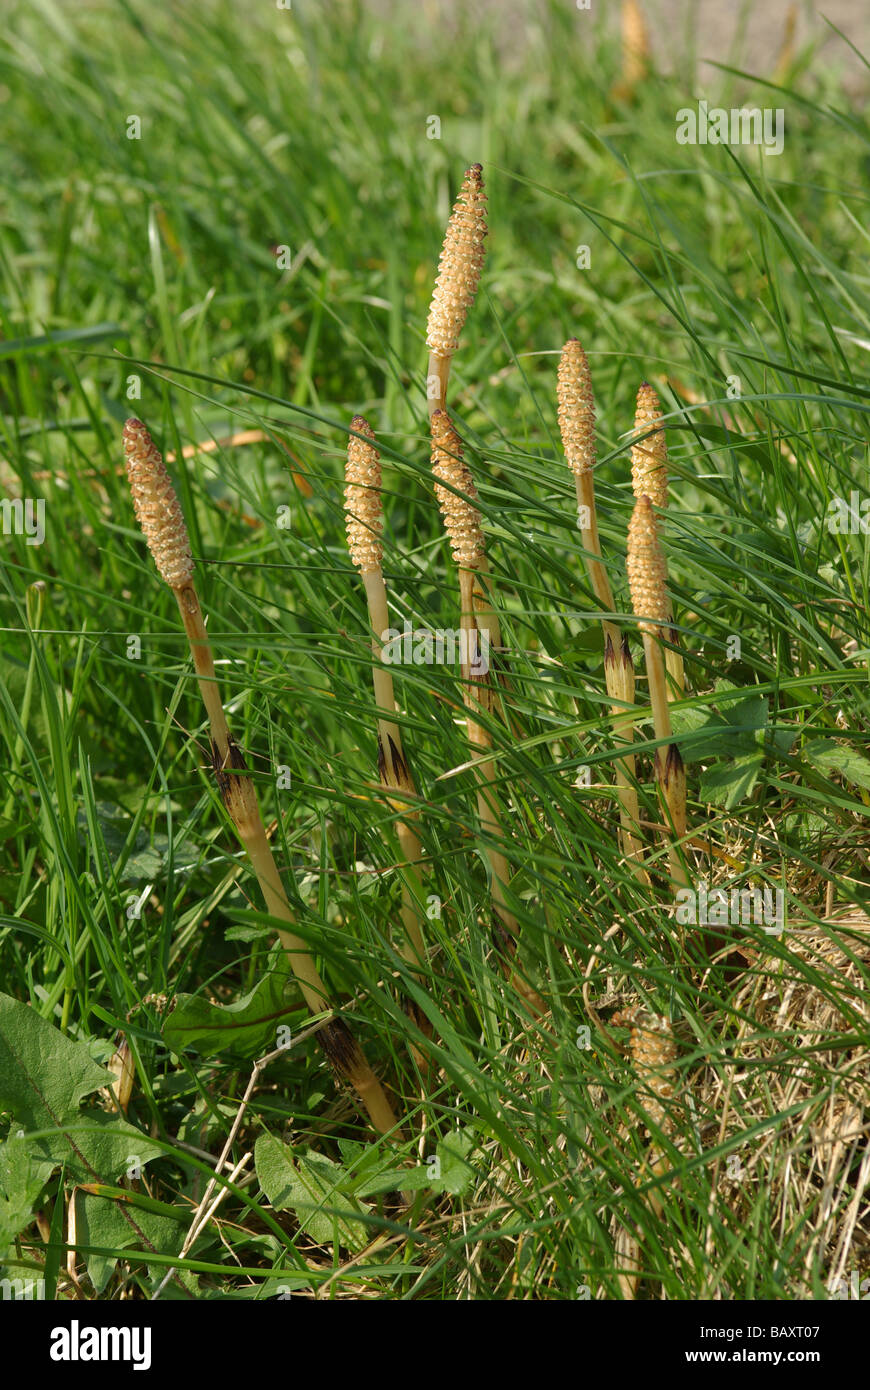 Campo común o Equiseto o cola de caballo - Equisetum arvense Foto de stock